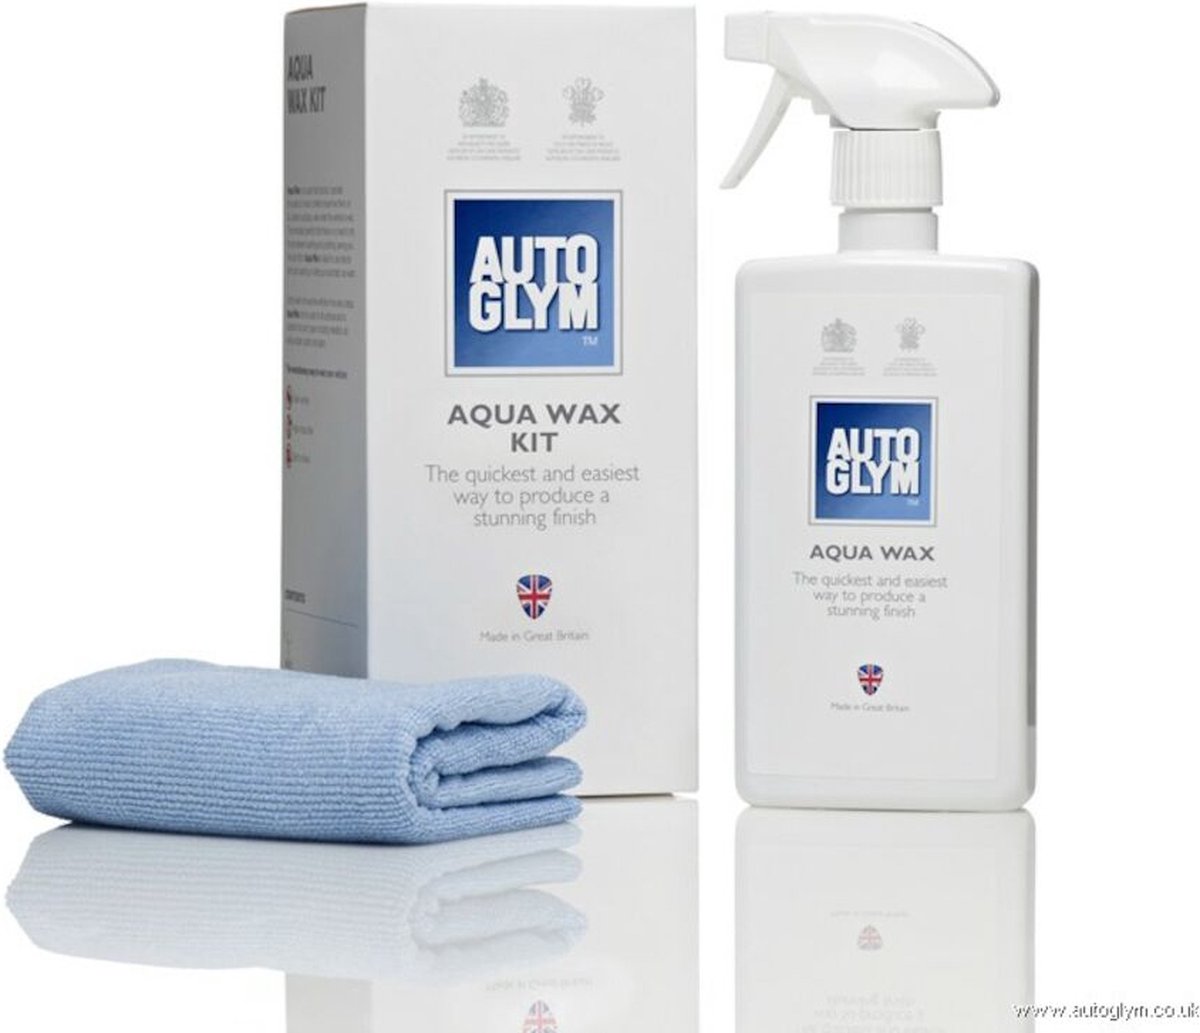 Autoglym aqua wax kit